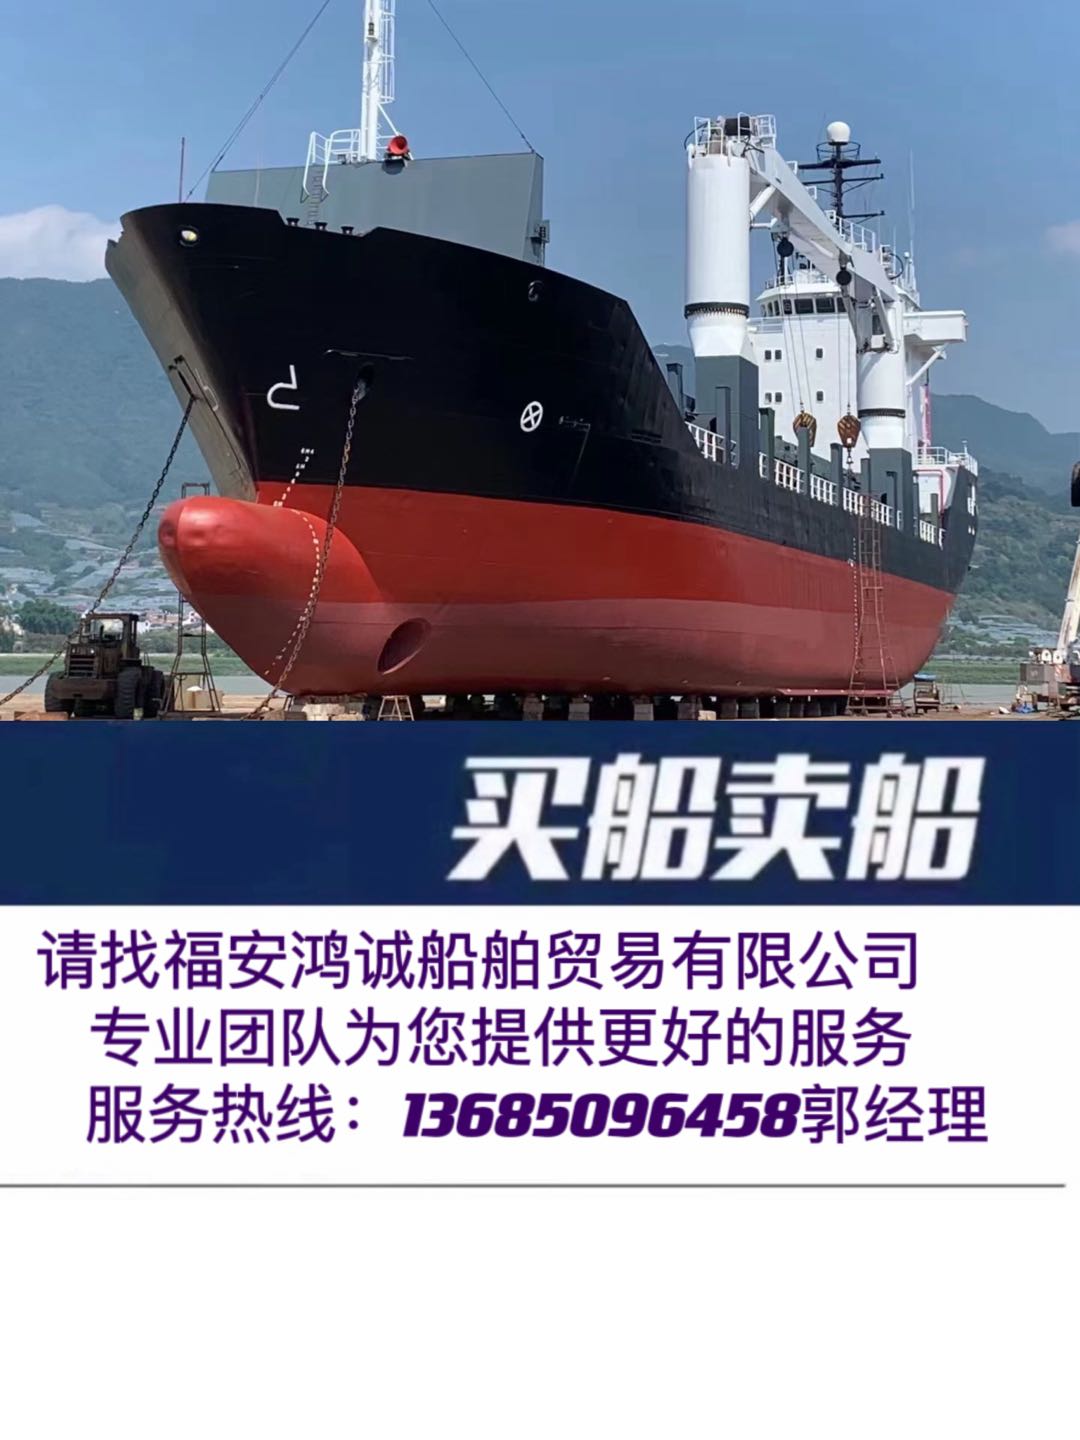 出售89年外贸3500吨多用途集装箱船